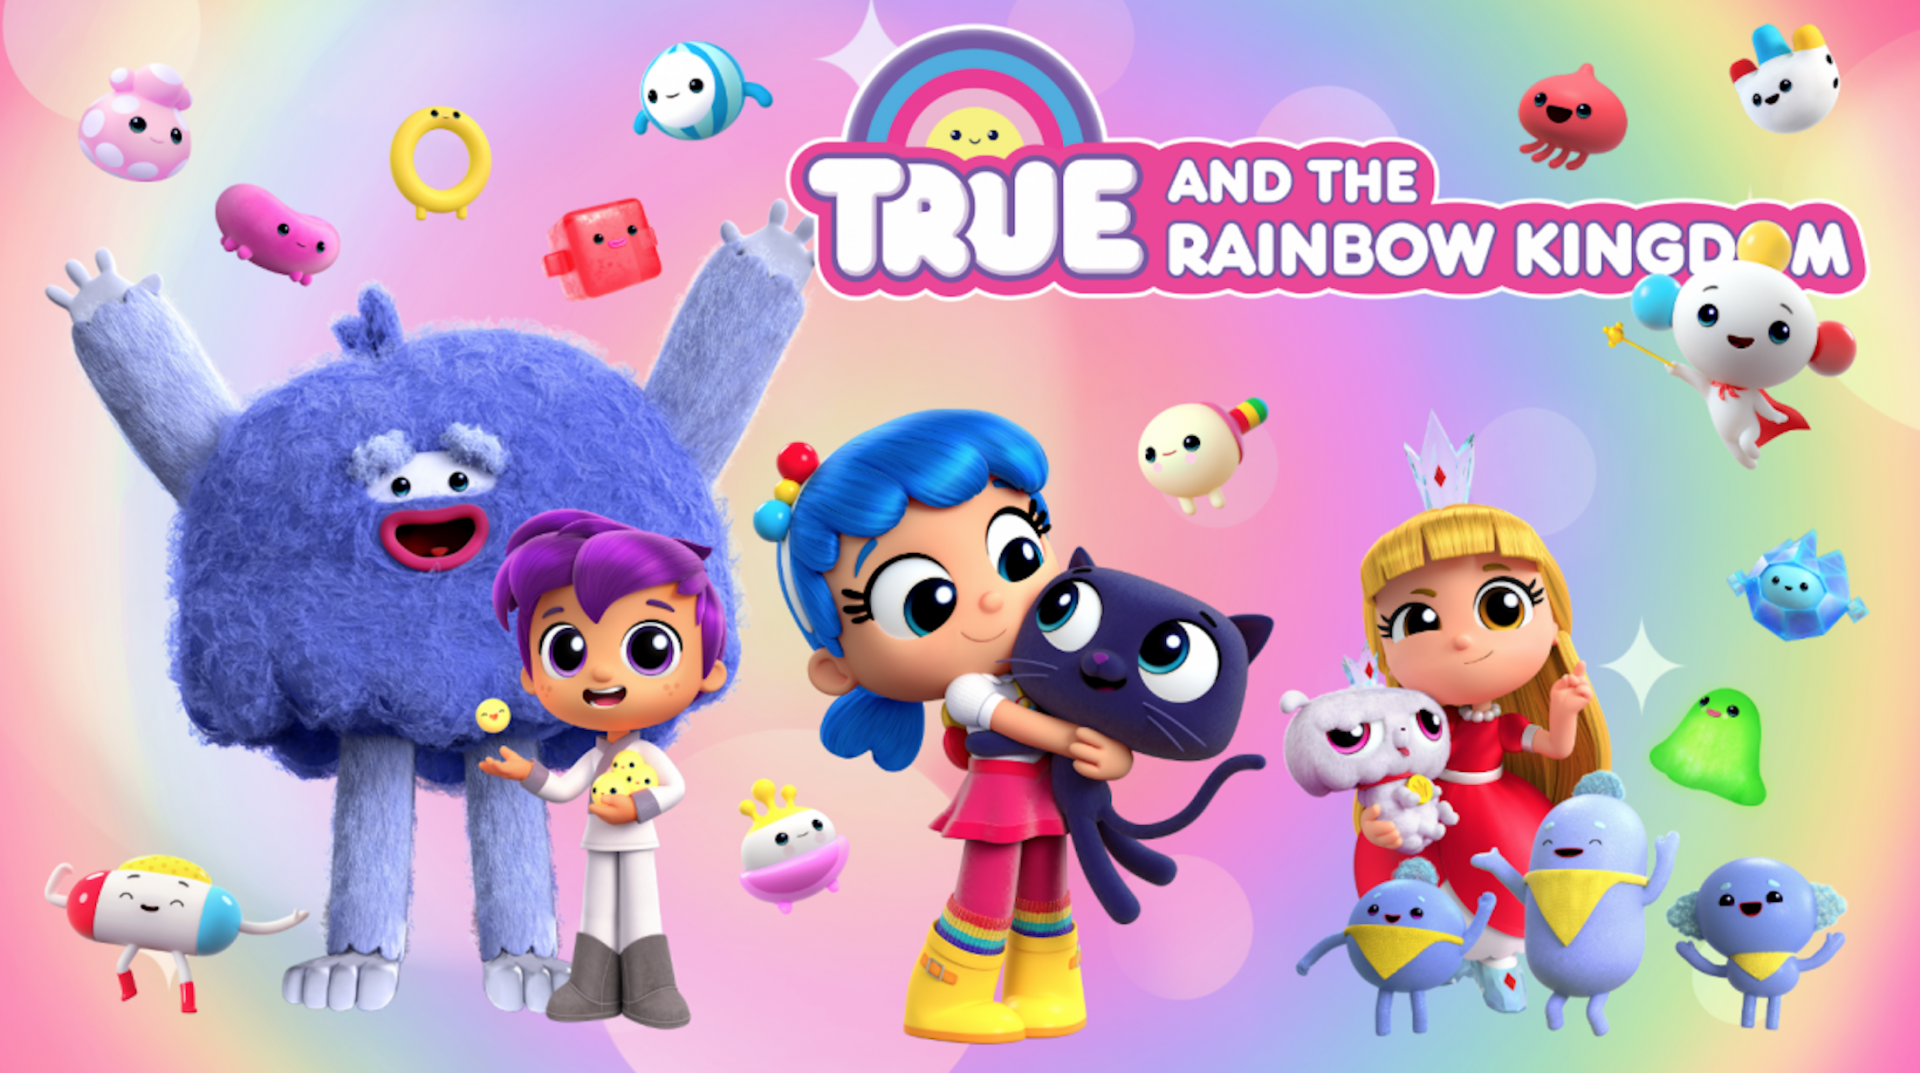 小真与彩虹王国 英文版 第1季《True and the Rainbow Kingdom》在线观看